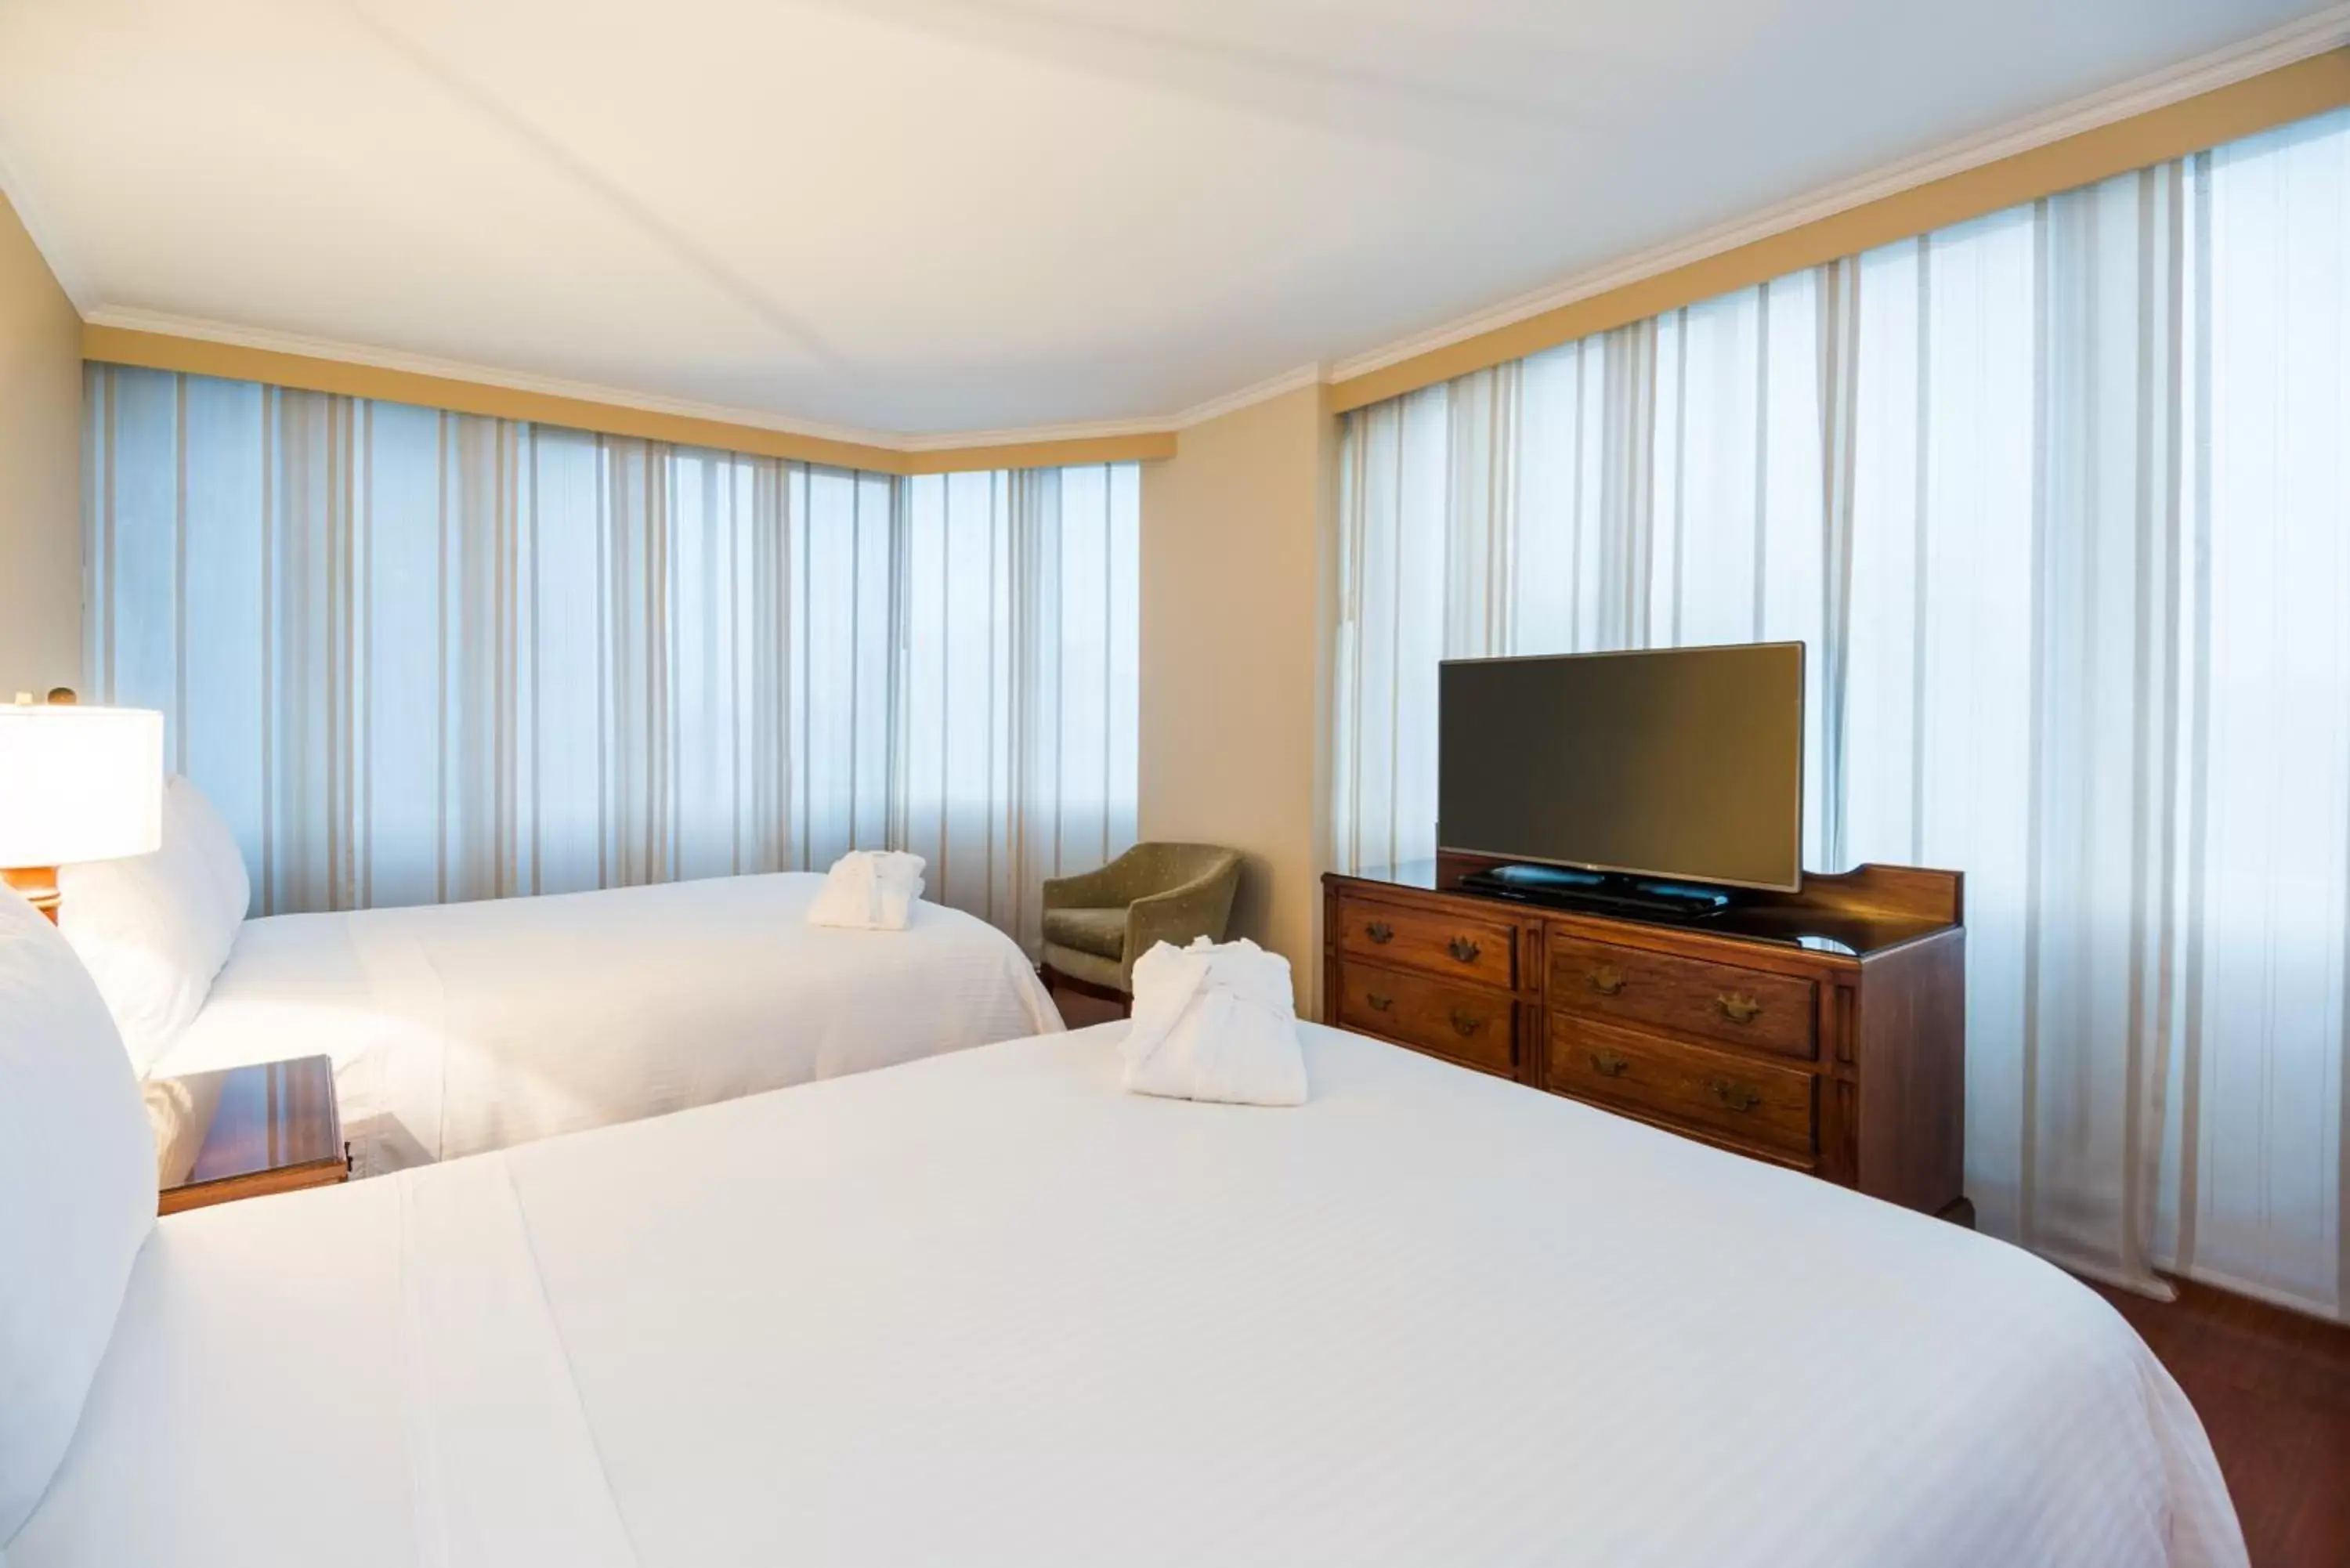 Bed in Cosmos 100 Hotel & Centro de Convenciones - Hoteles Cosmos